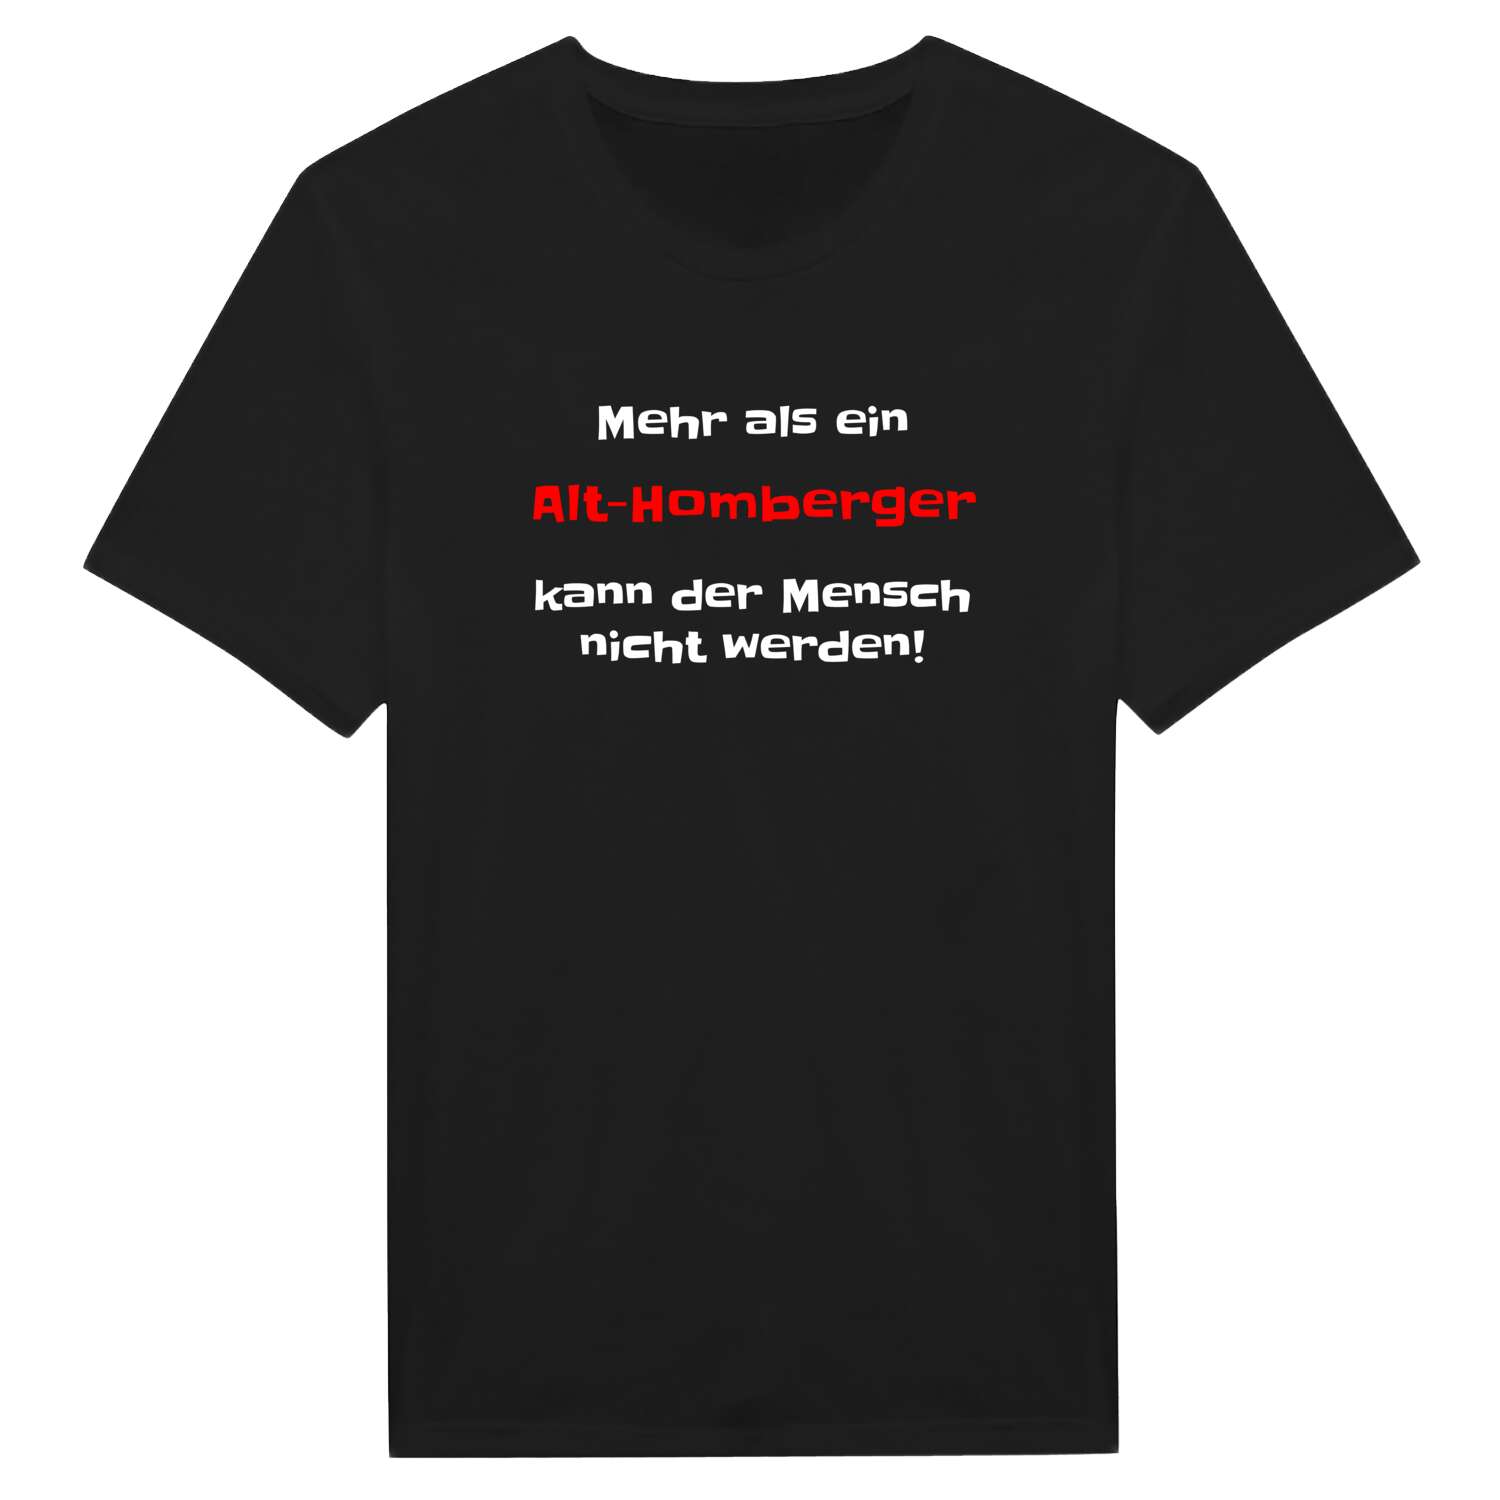 Alt-Homberg T-Shirt »Mehr als ein«